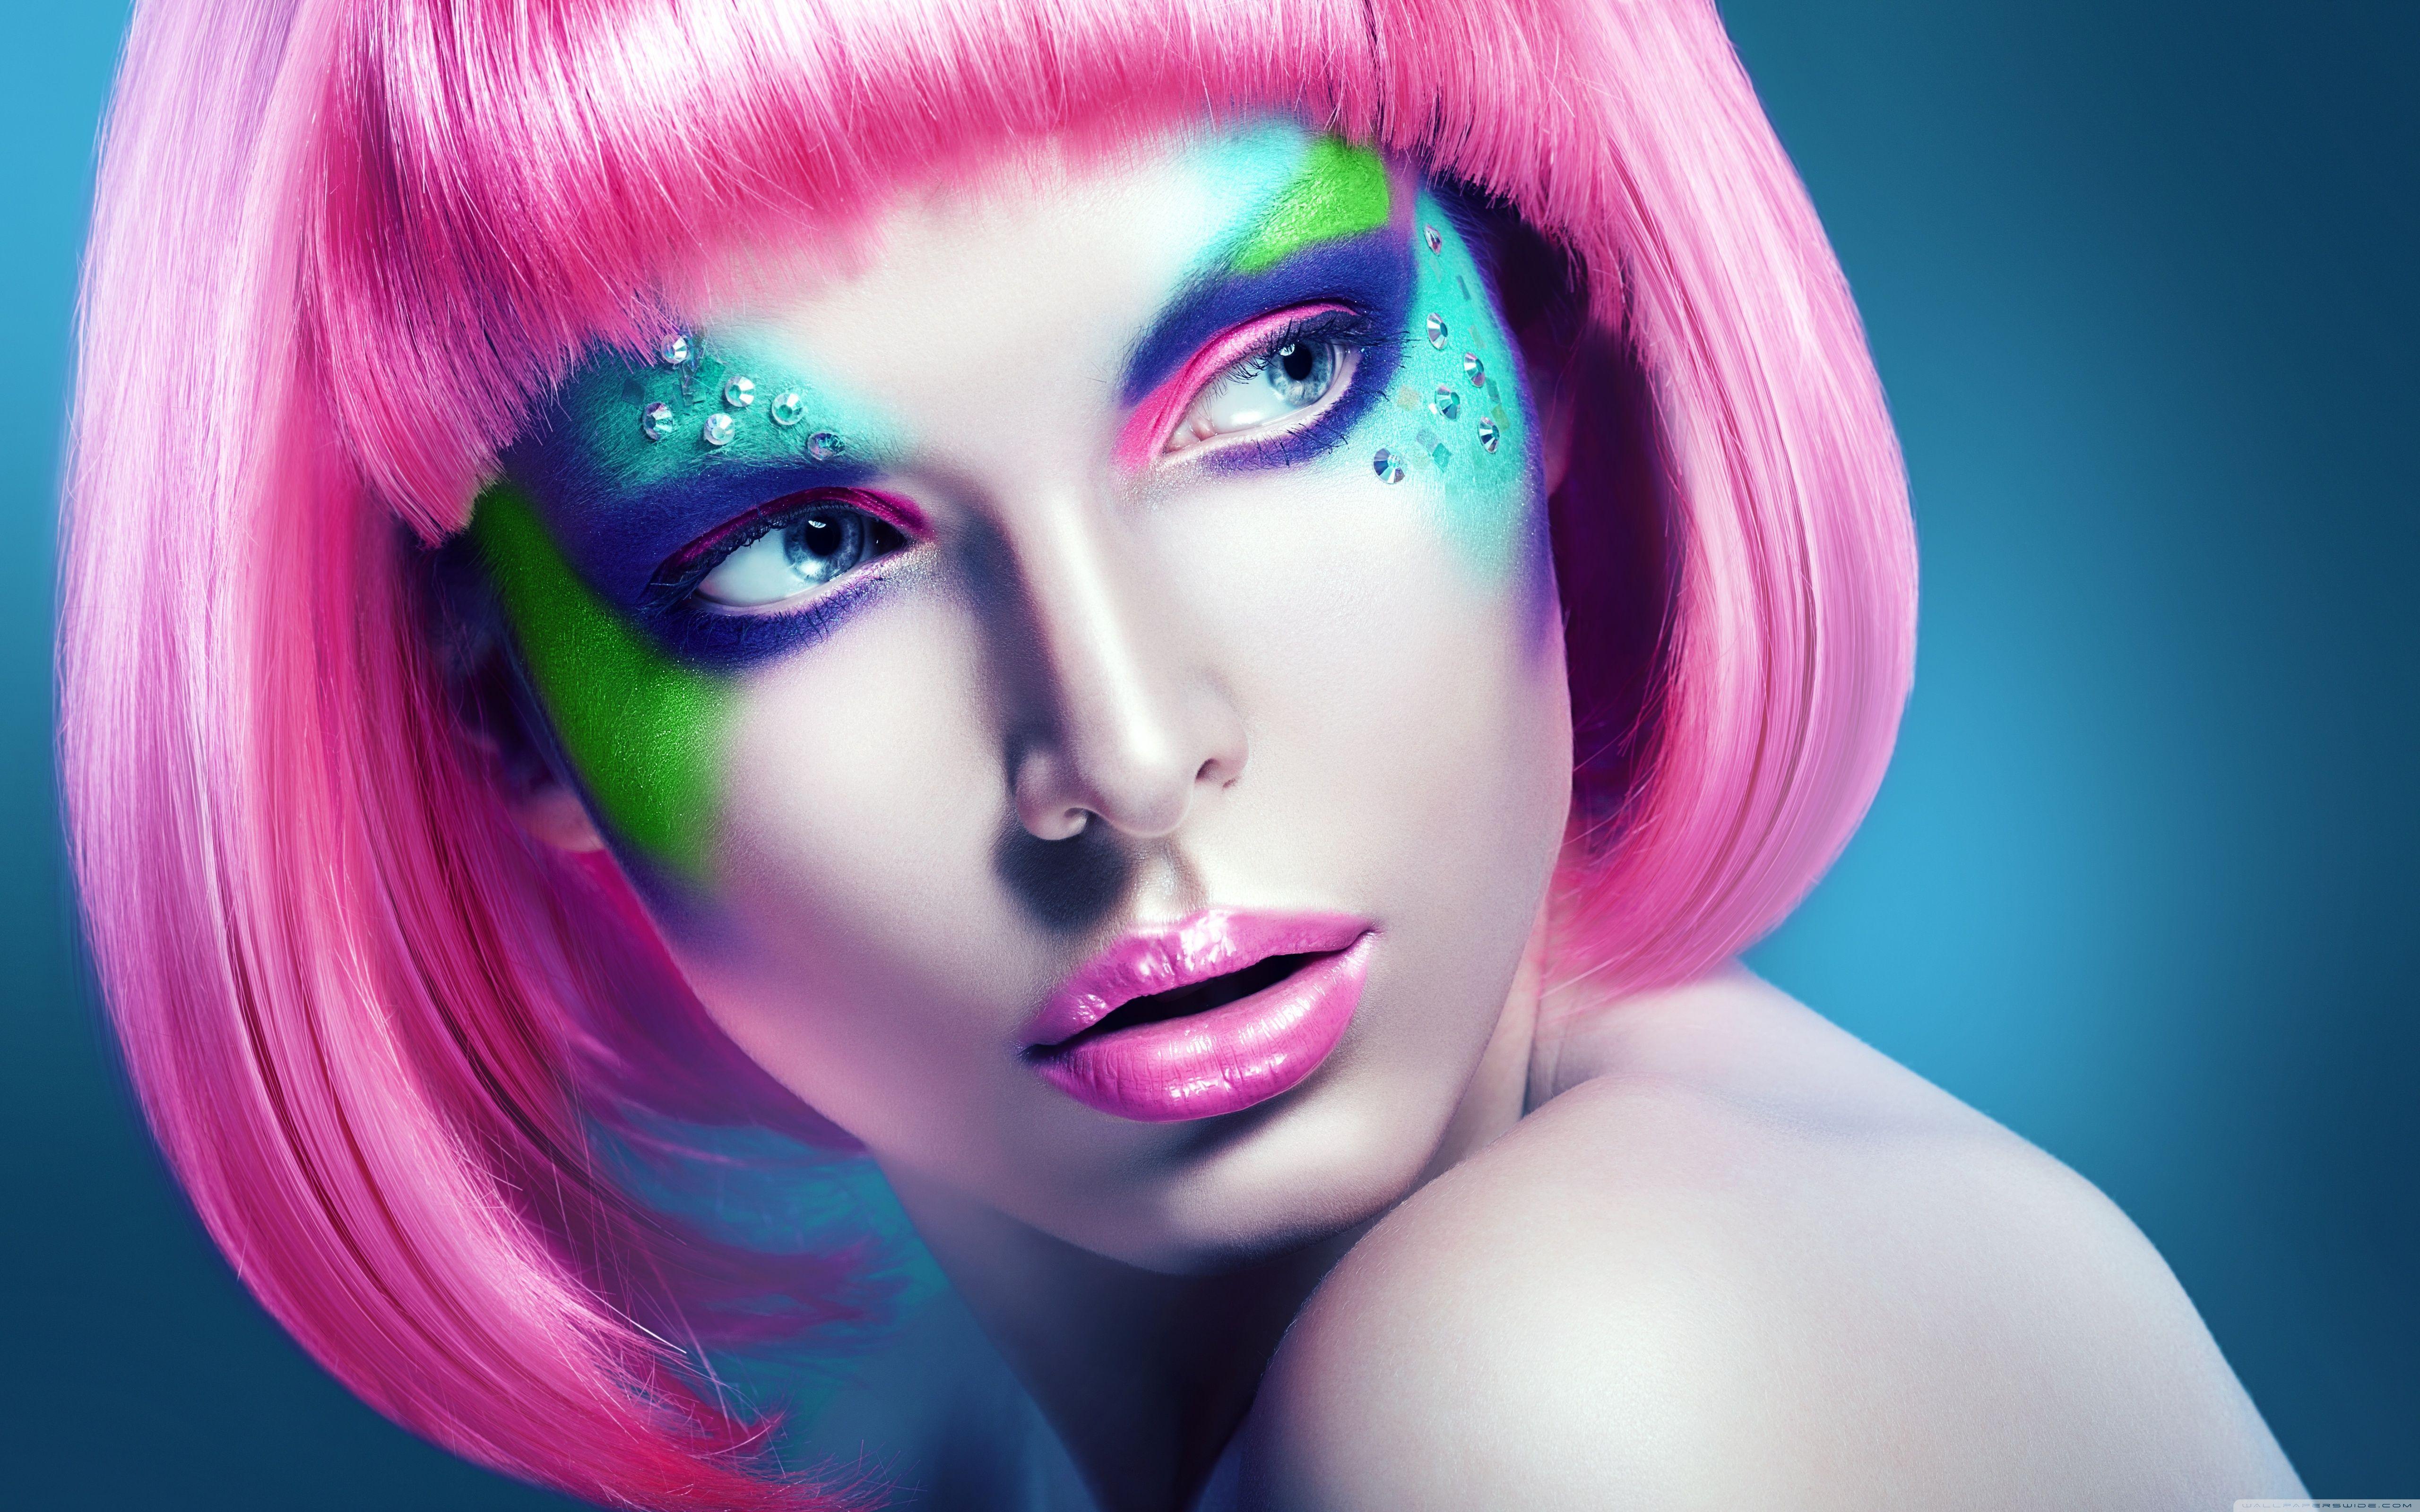 Girl Makeup HD desktop wallpaper, Widescreen, High Definition